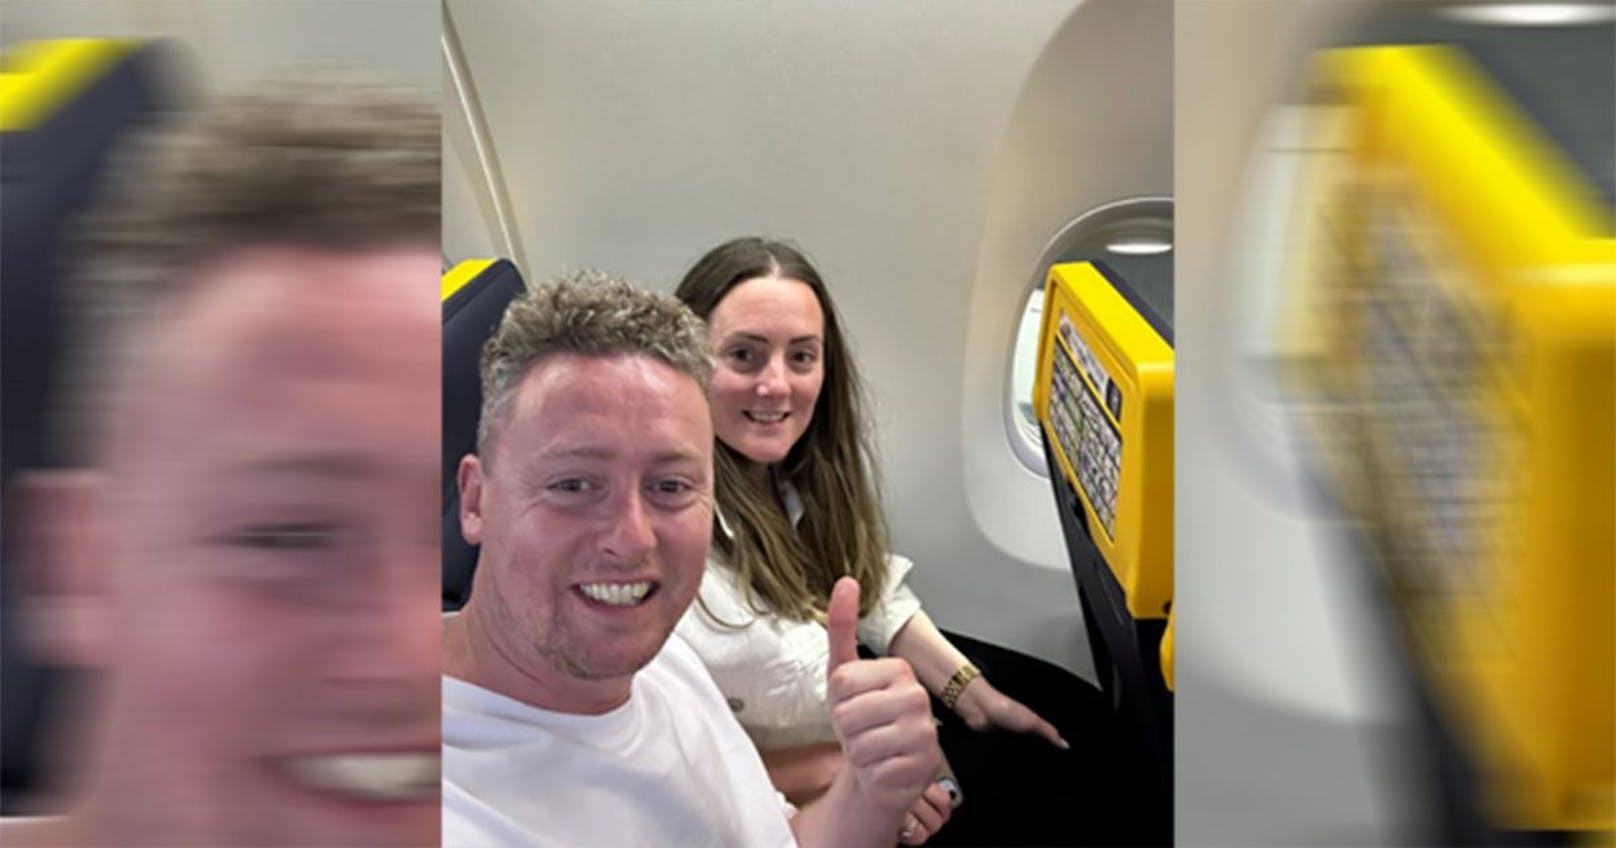 Sitzplatz ohne Fenster – so reagiert Ryanair auf Kritik